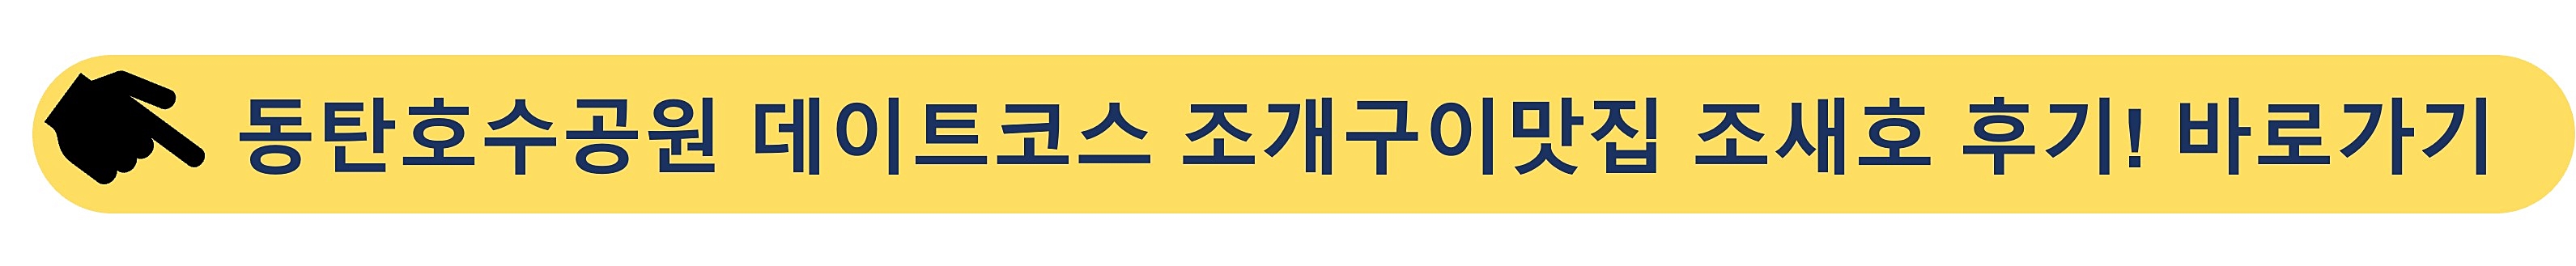 동탄호수공원-조새호